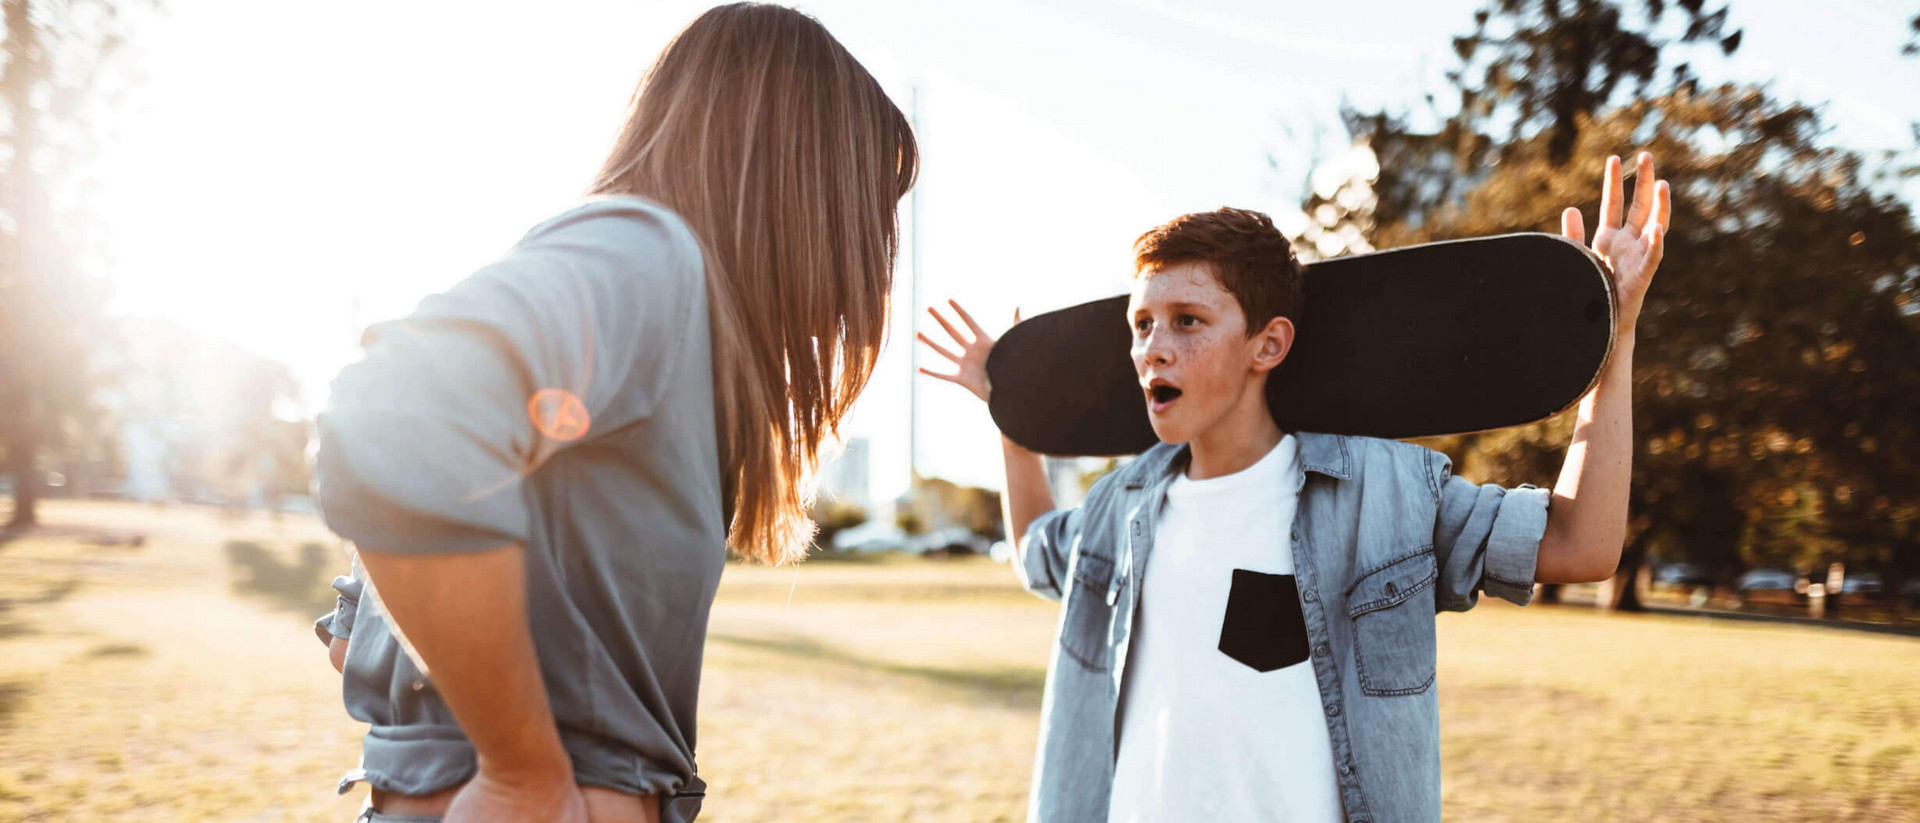 Ein junge und seine Mutter stehen sich gegenüber wie im Streit. Der junge trägt ein Skateboard auf seinen Schultern, die Mutter hat ihre Hände in die Hüften gestemmt.